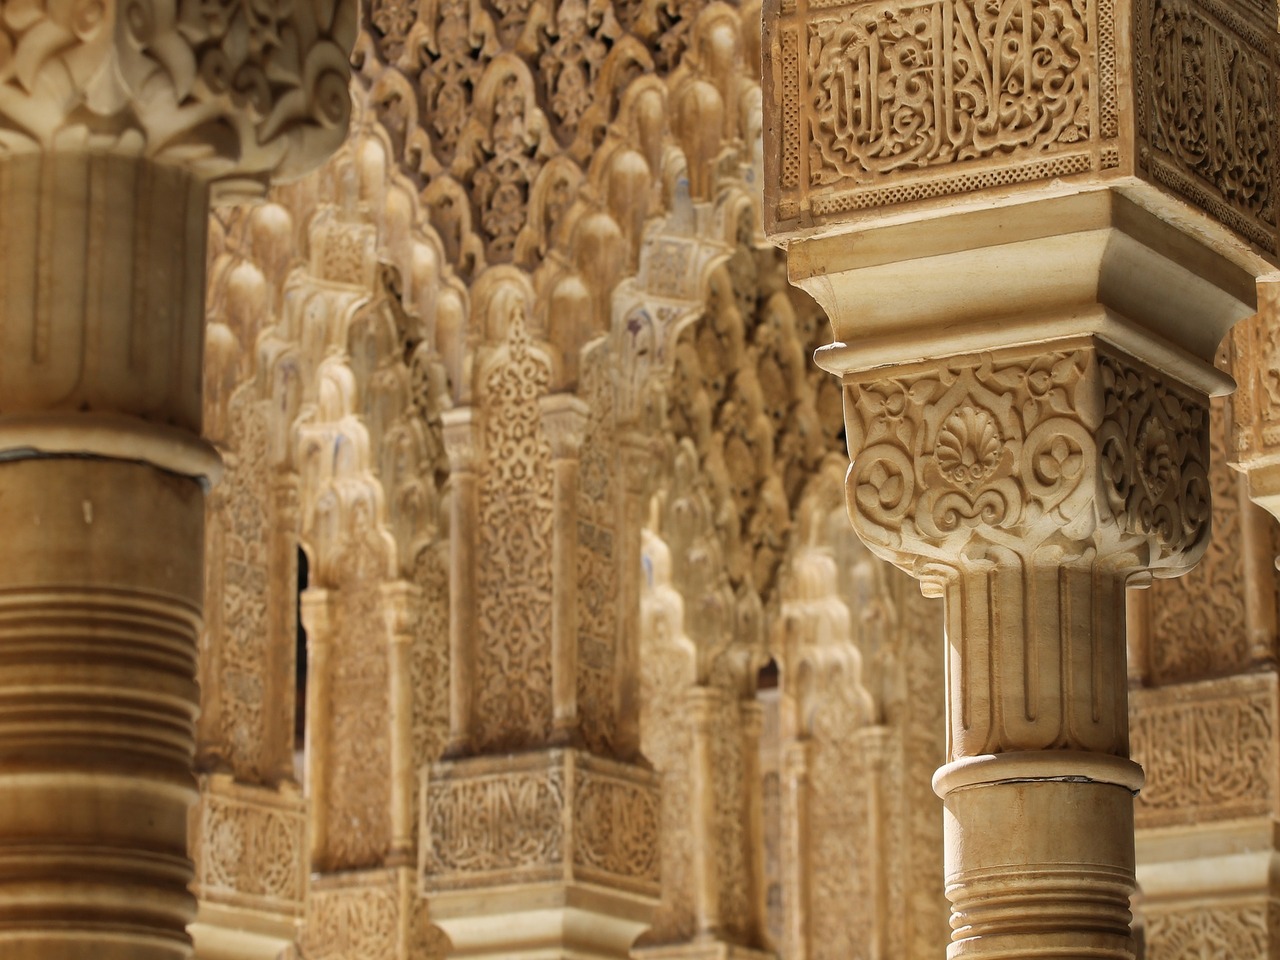 Colonnes architecturales de style arabe